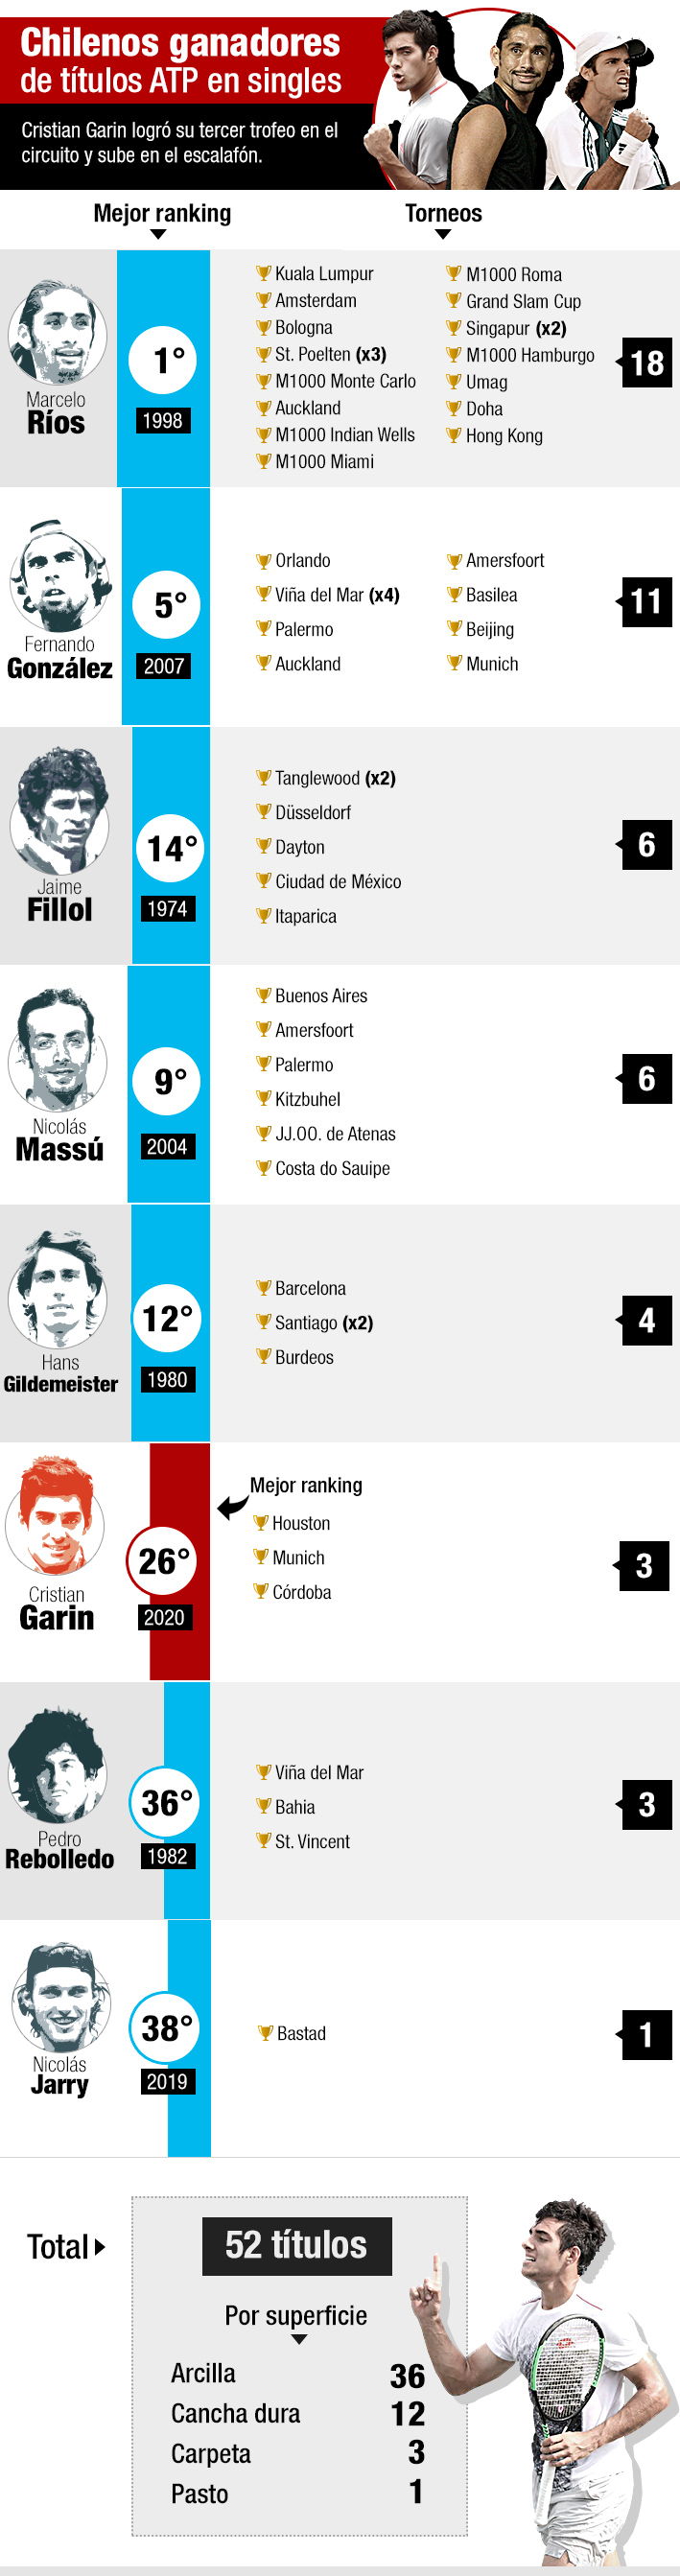 Marcelo Ríos lidera la lista y Garin ya suma tres... Quiénes son los chilenos que han ganado títulos ATP y en qué torneos